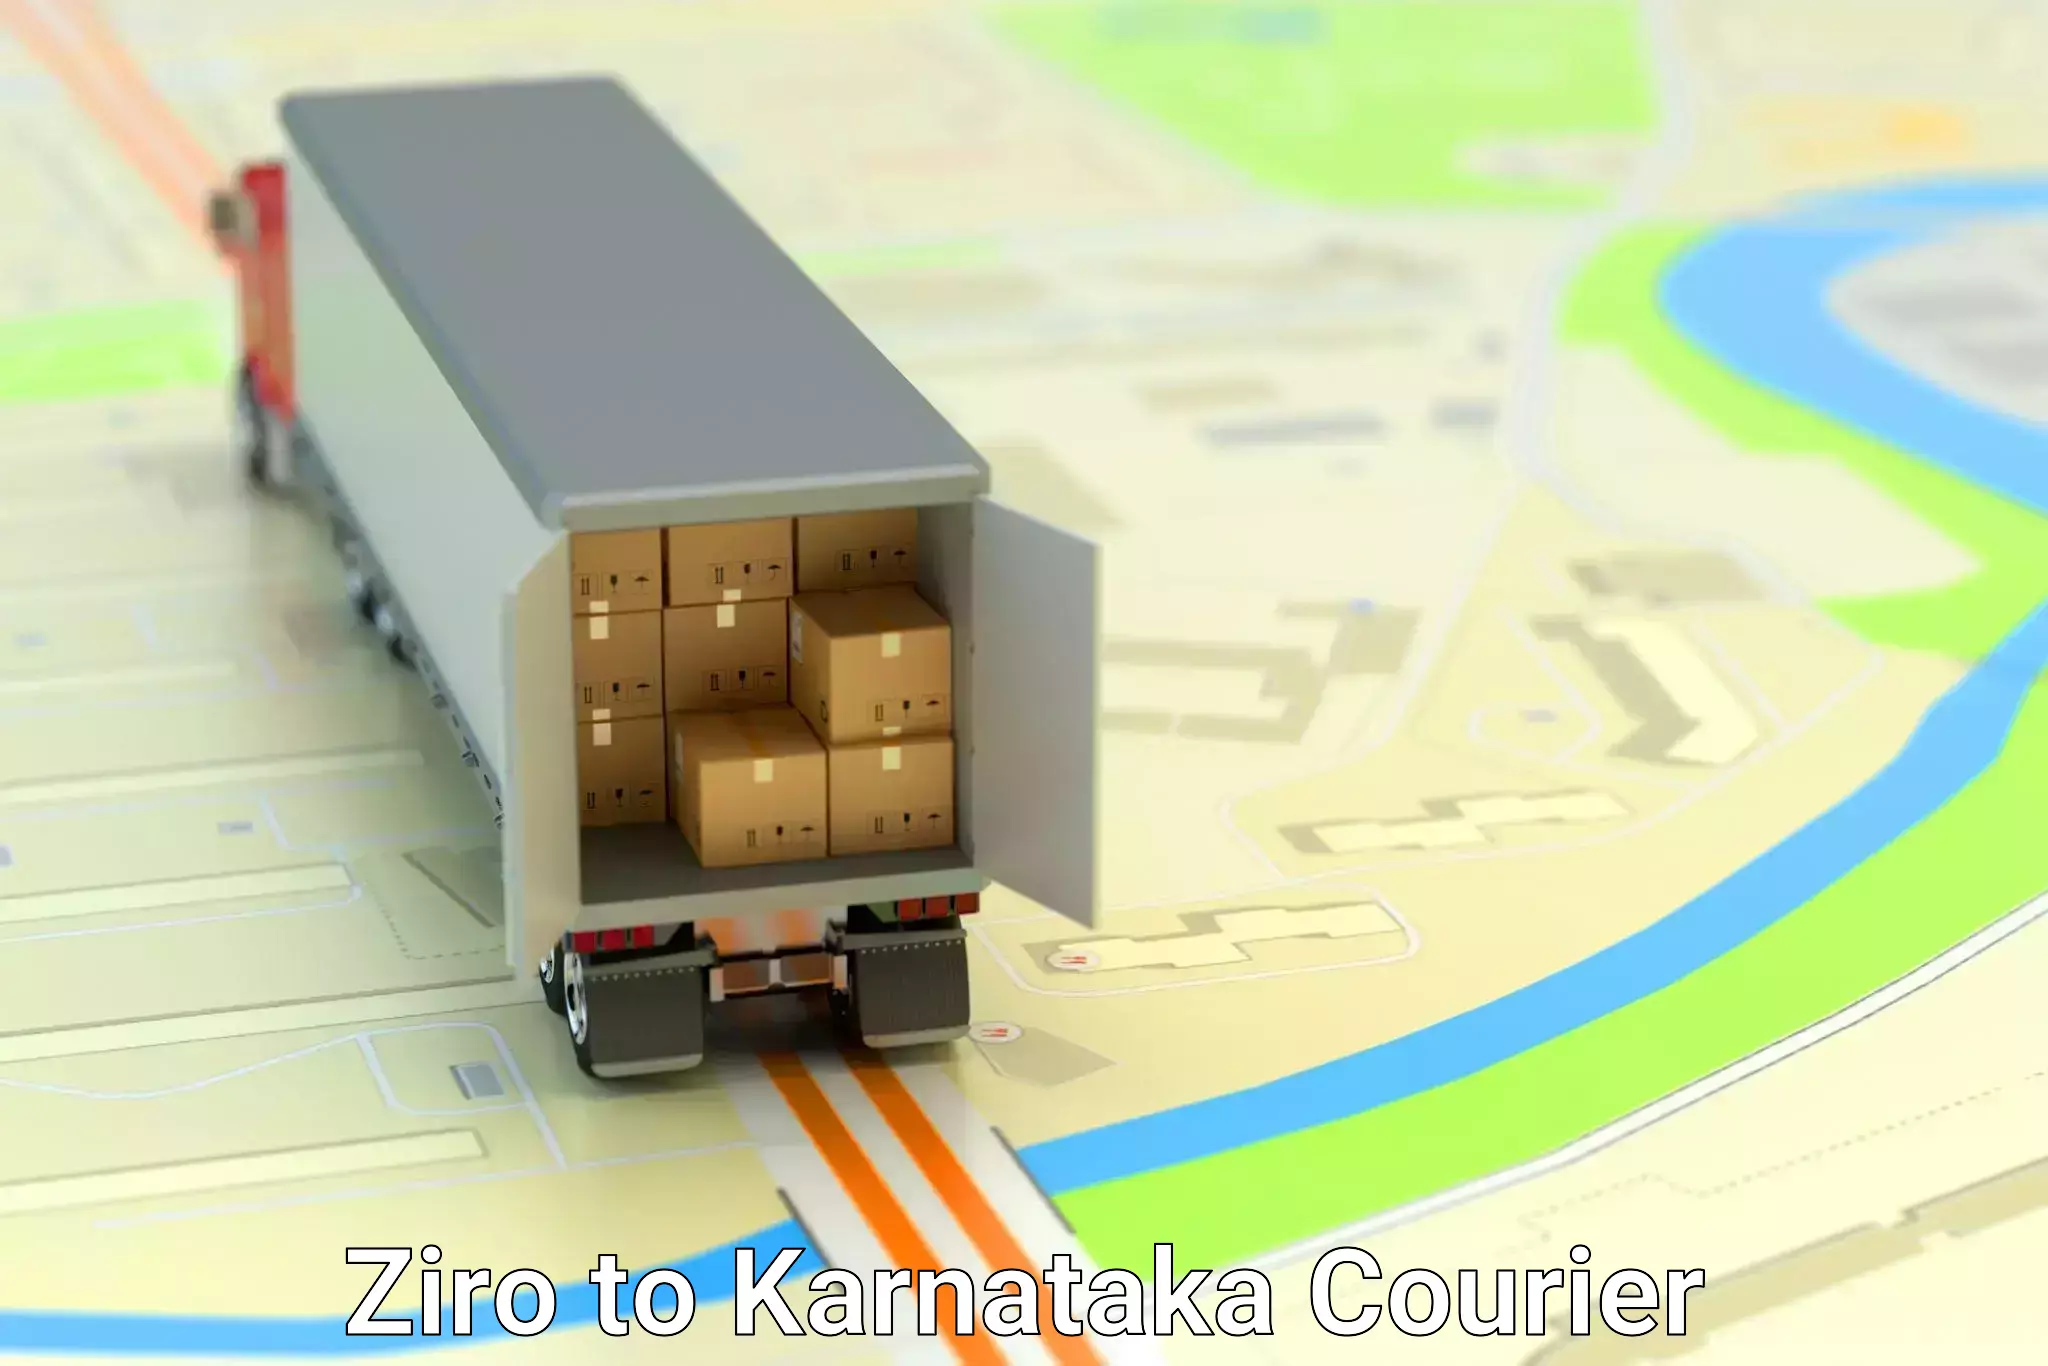 Express logistics service Ziro to Kalaburagi